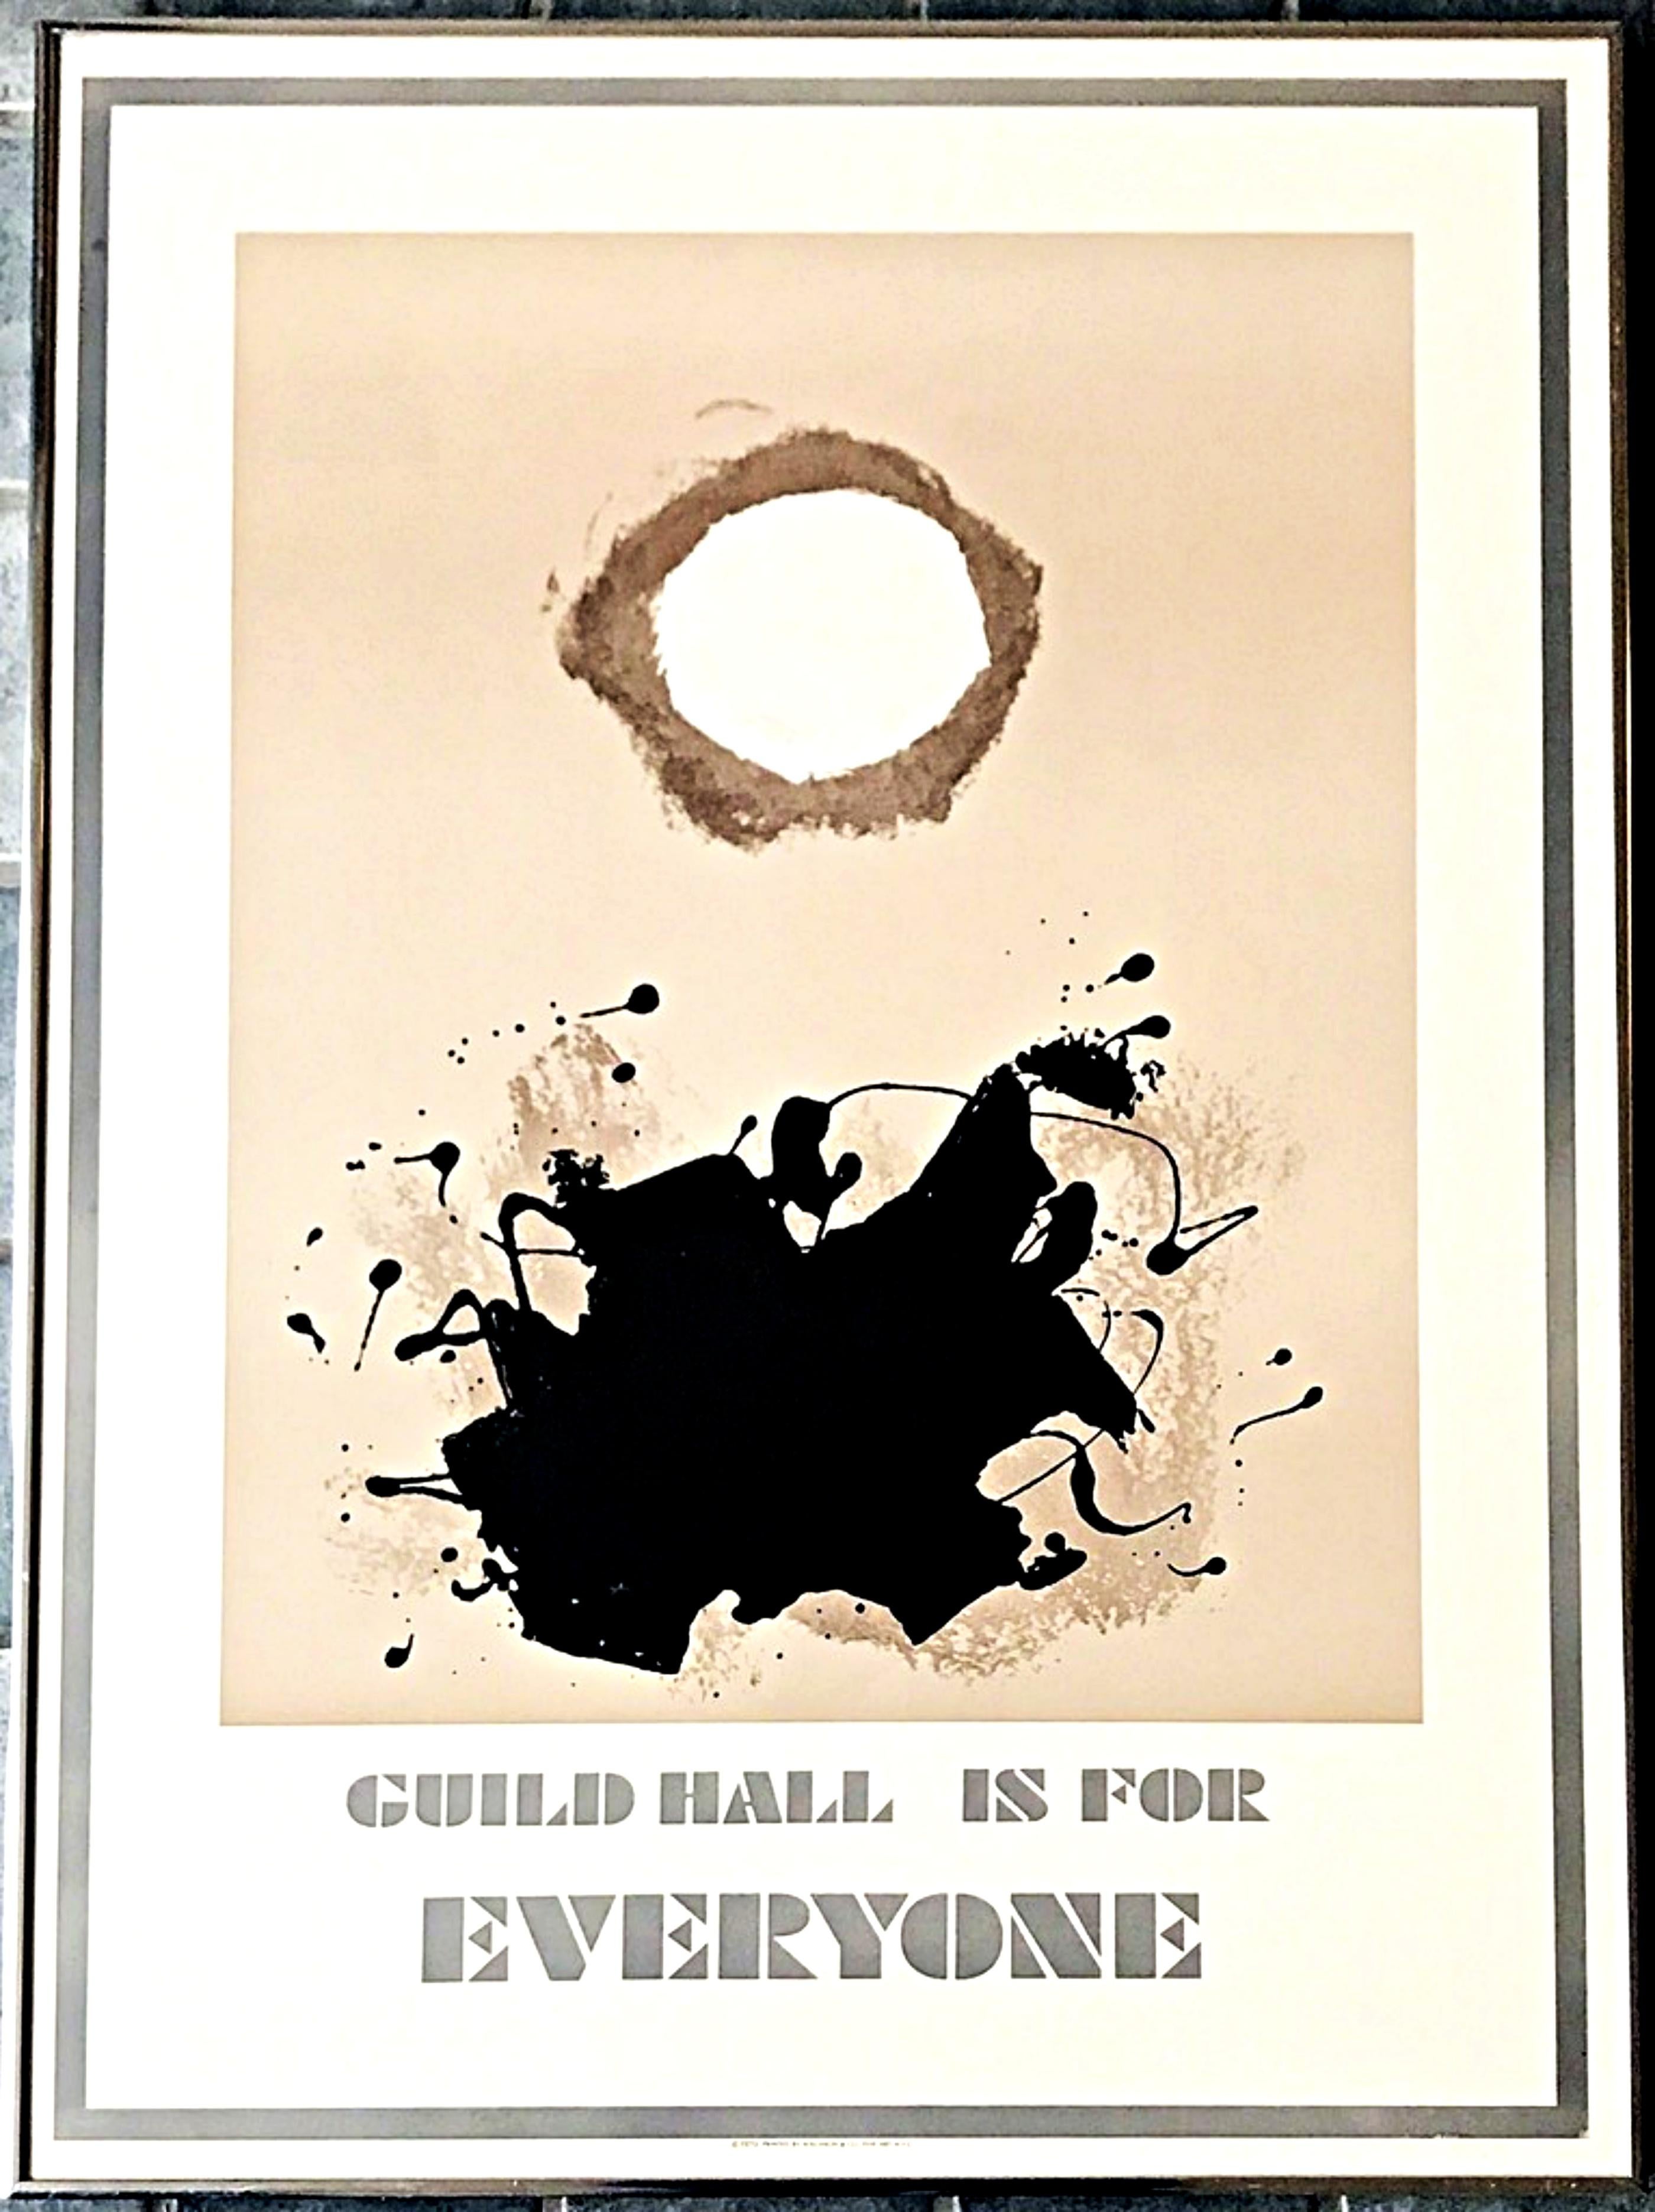 Adolph Gottlieb
Guild est pour tout le monde, 1970
Poster vintage en lithographie offset 
Métal vintage Cadre inclus

Rare affiche vintage, édition limitée, lithographie offset. Don du cabinet d'avocats DLA Piper au Denver Art Museum. Dépossédé du